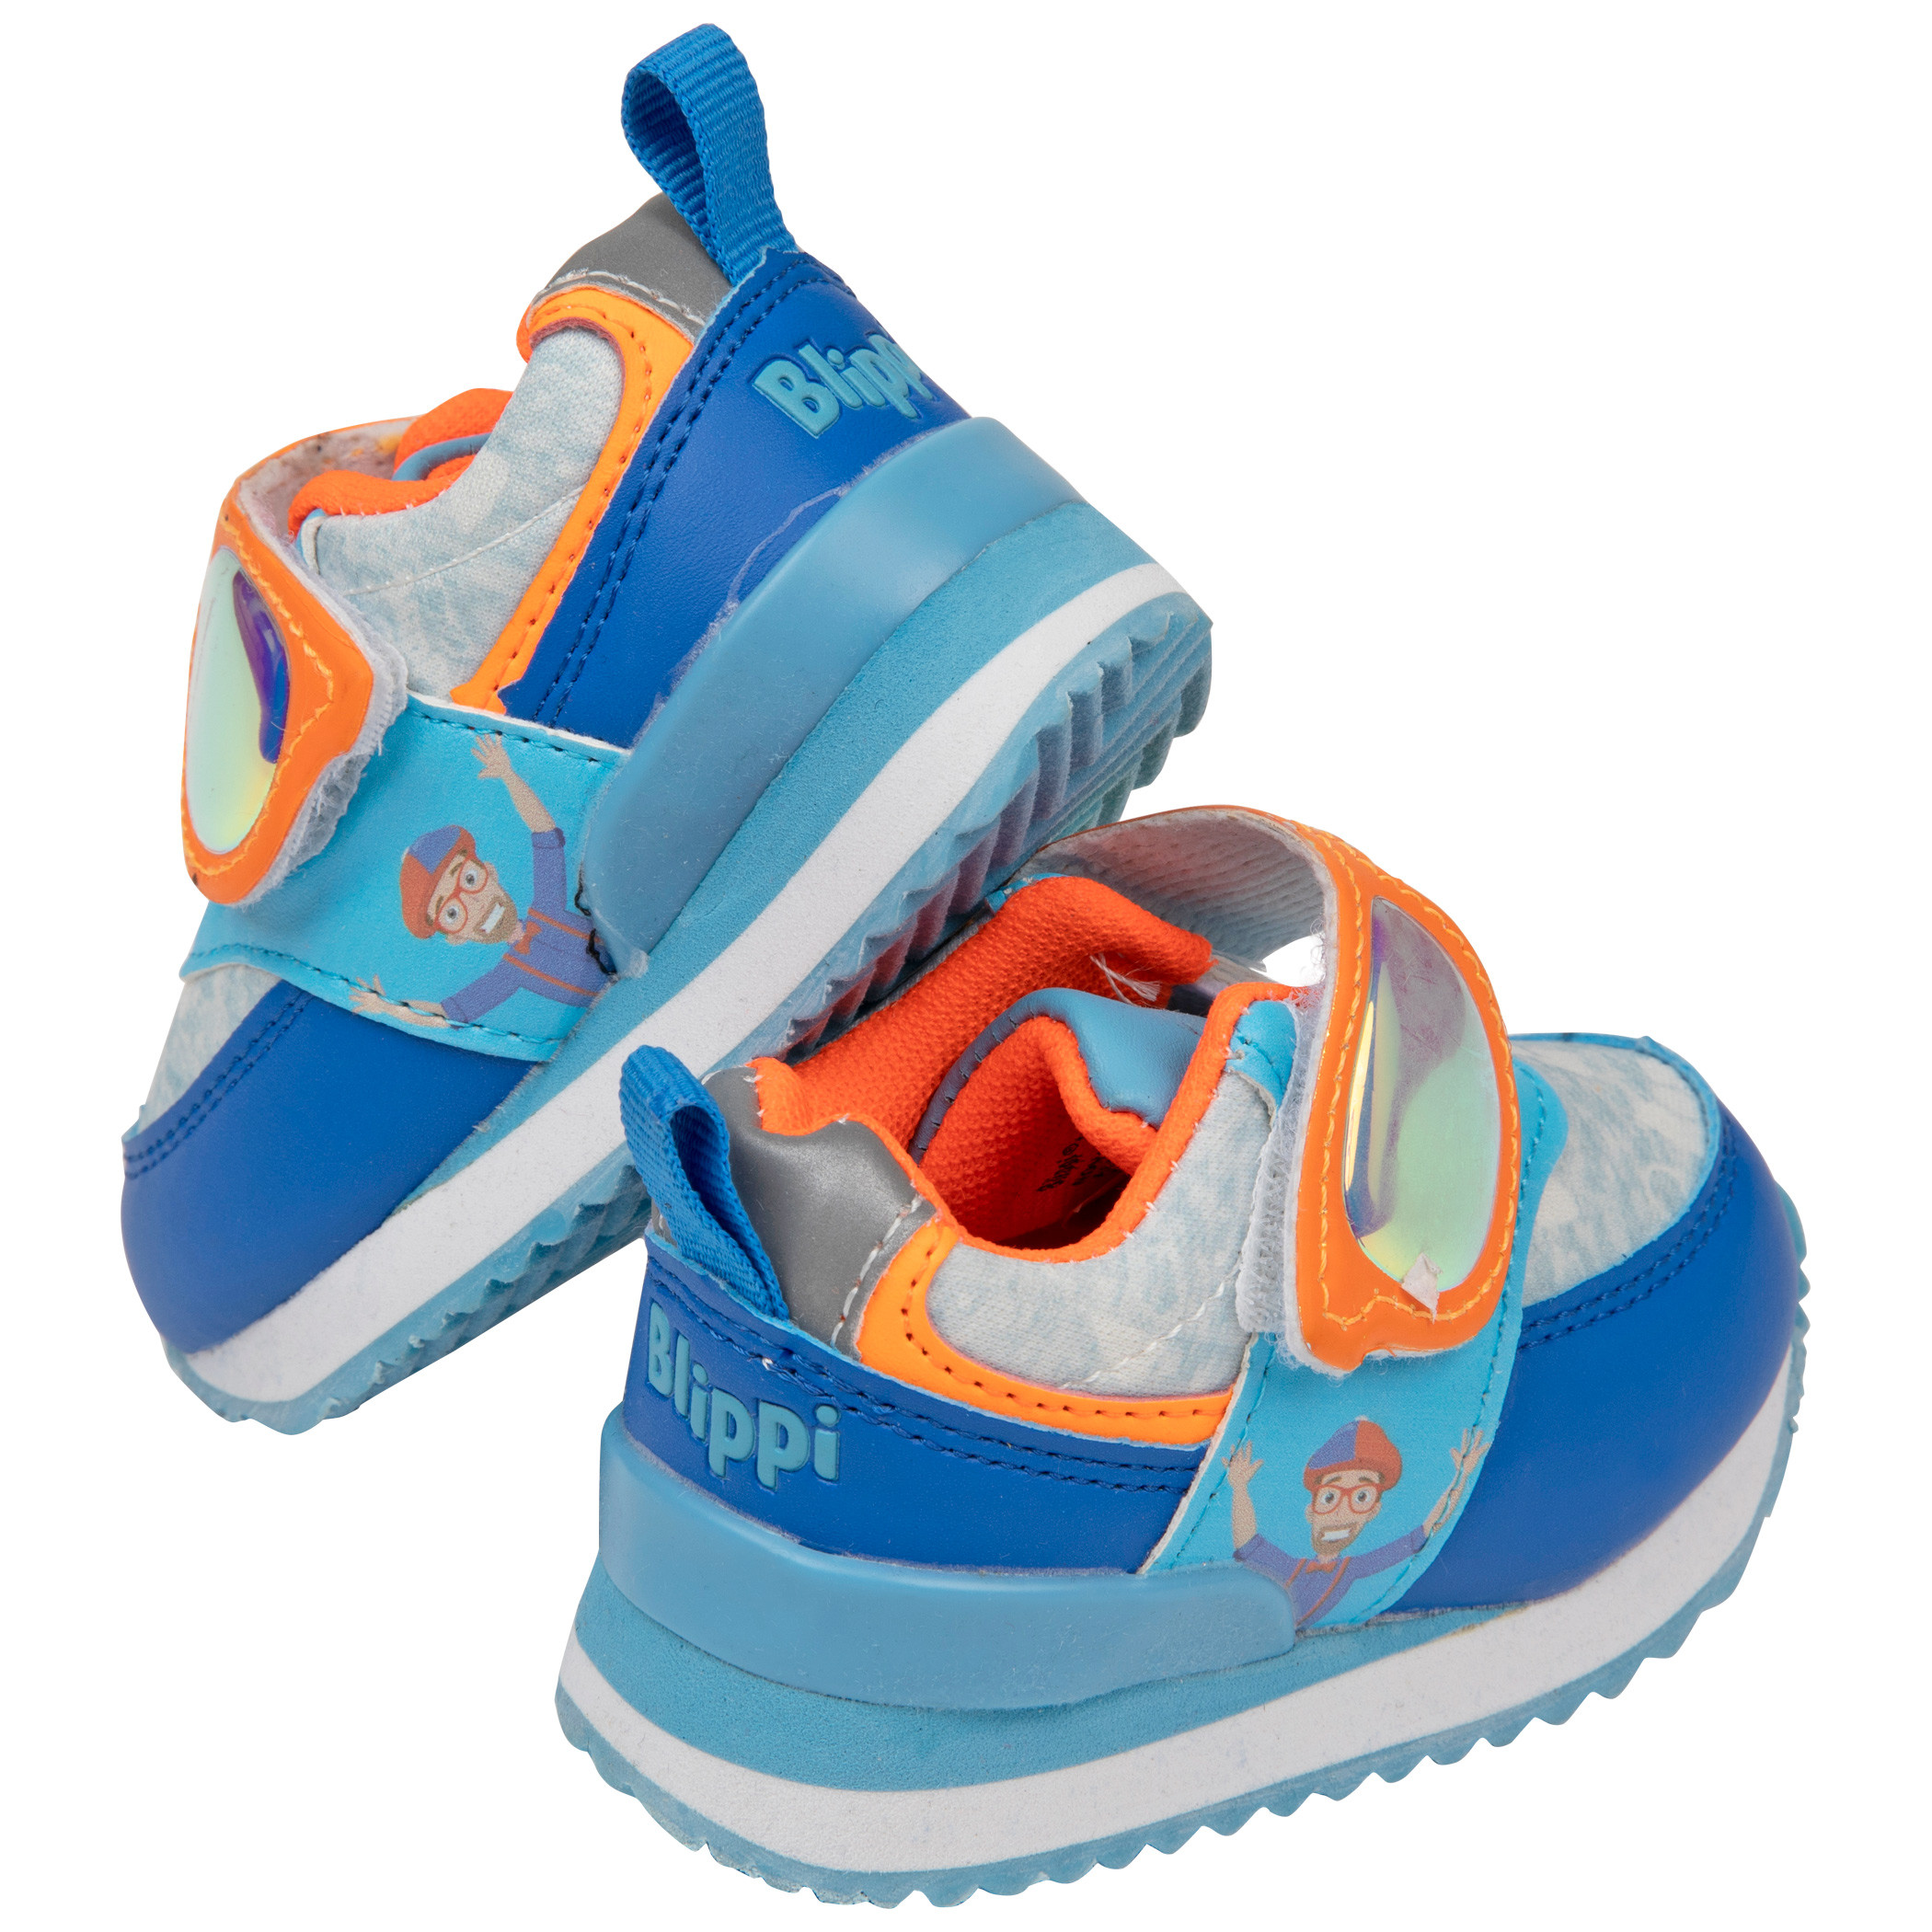 ▣ Customized BLIPPI shoes on High-cut | Lazada PH